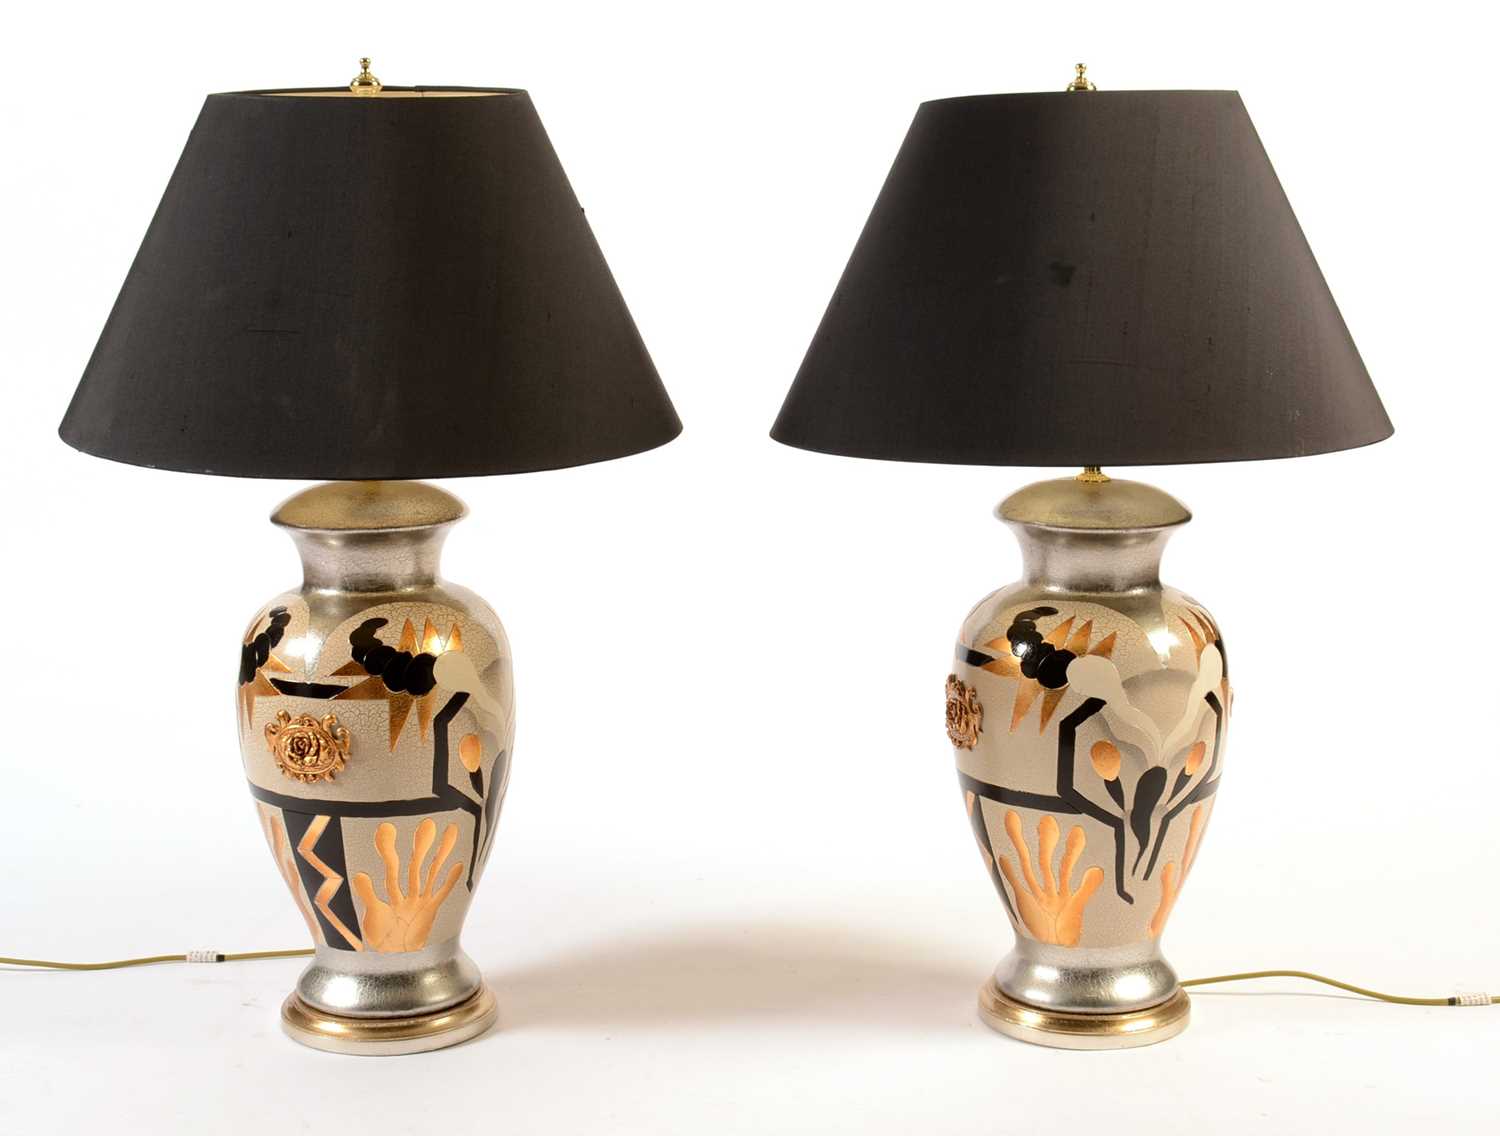 A pair of 'Legend' Model LT-E8 Art Deco style table lamps.